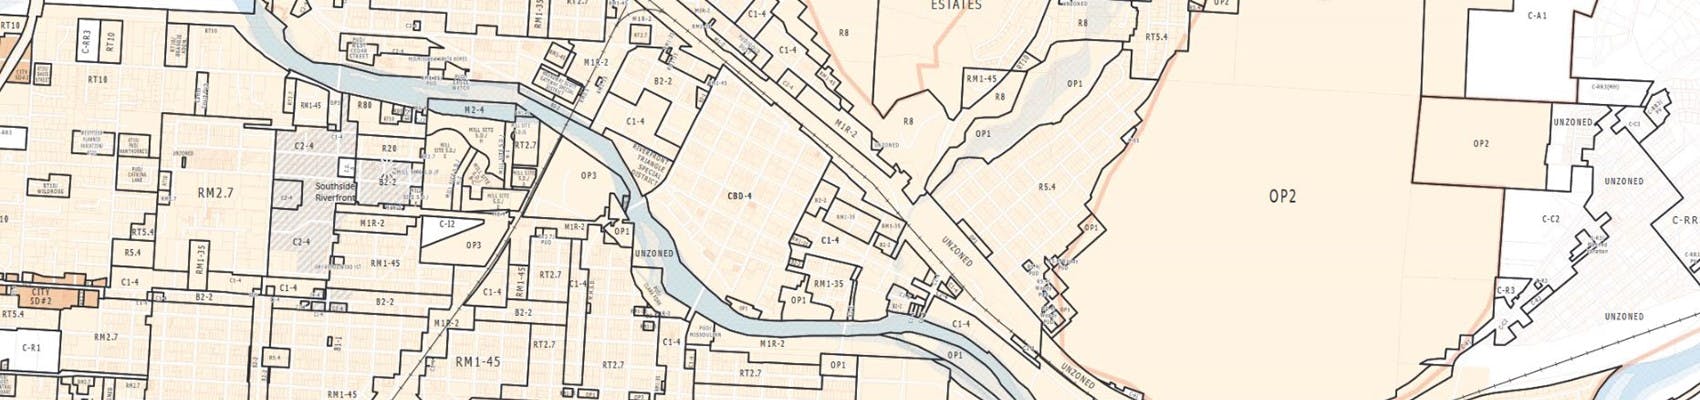 Cutout of Missoula Zoning Map